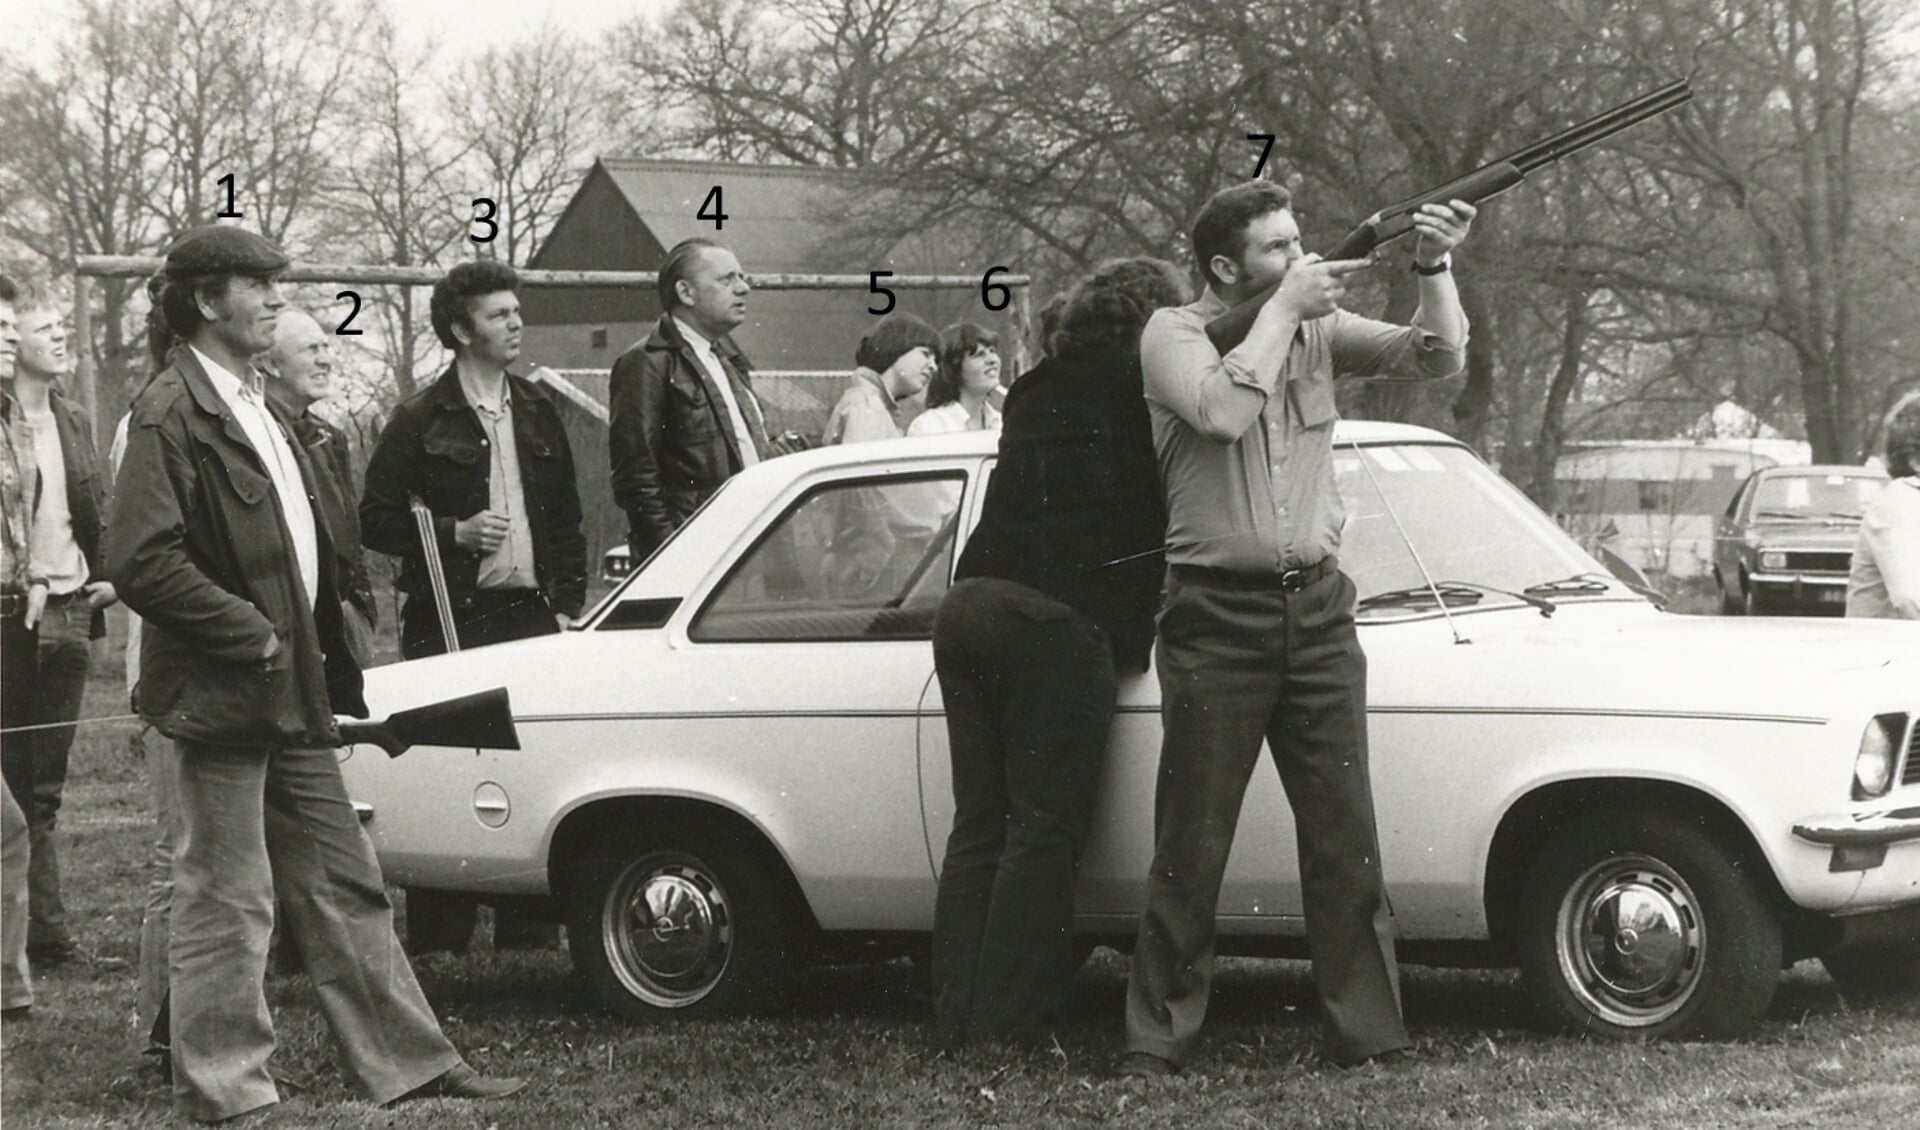 HV03457: Foto is gemaakt in 1978. Mensen aan het kleiduivenschieten. 